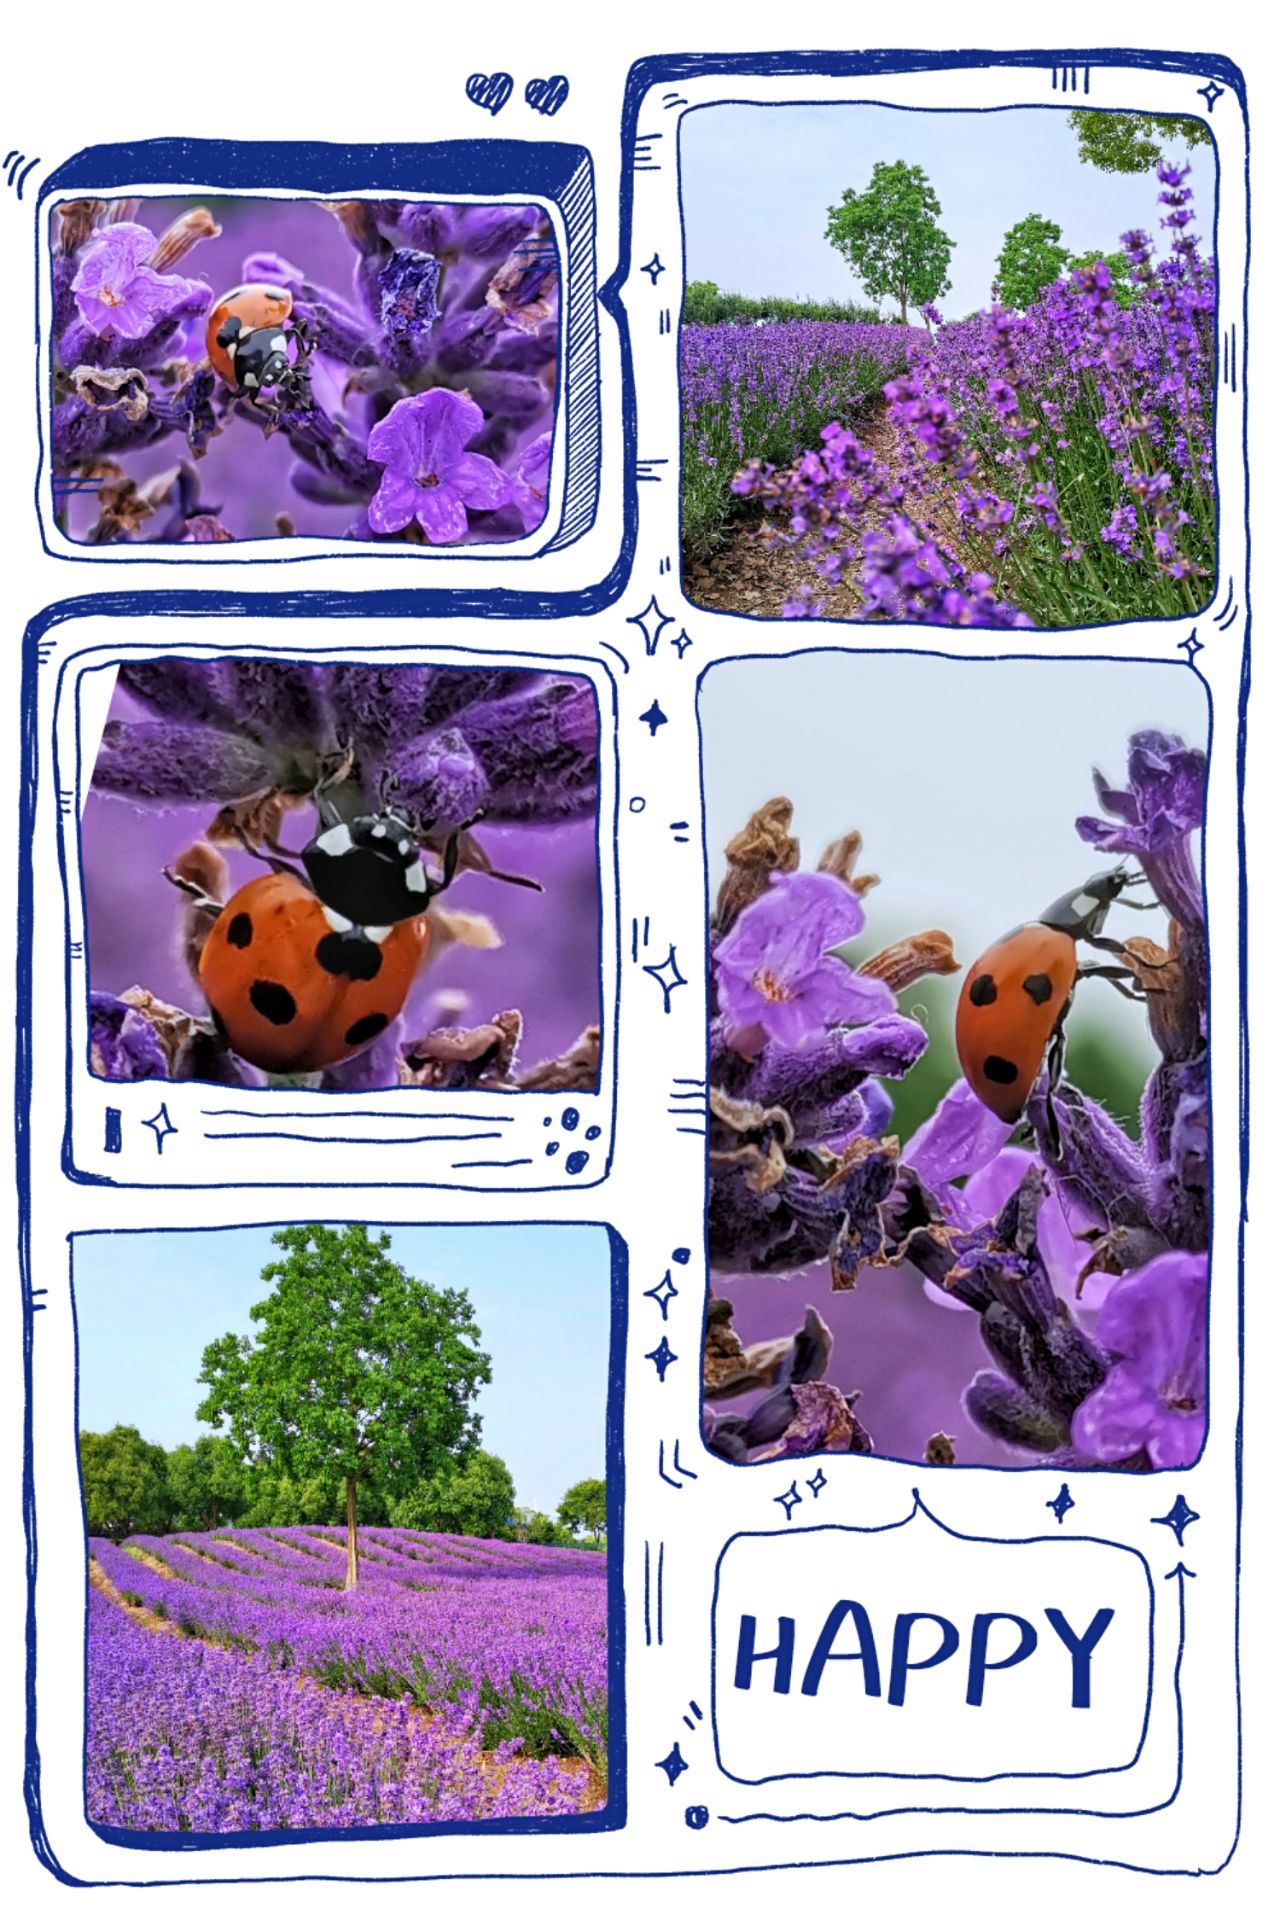 跟着花大姐（七星瓢虫）去赏薰衣草了。  初夏最美丽的一定是那一片片紫色，没错，说的就是那芳香四溢的薰